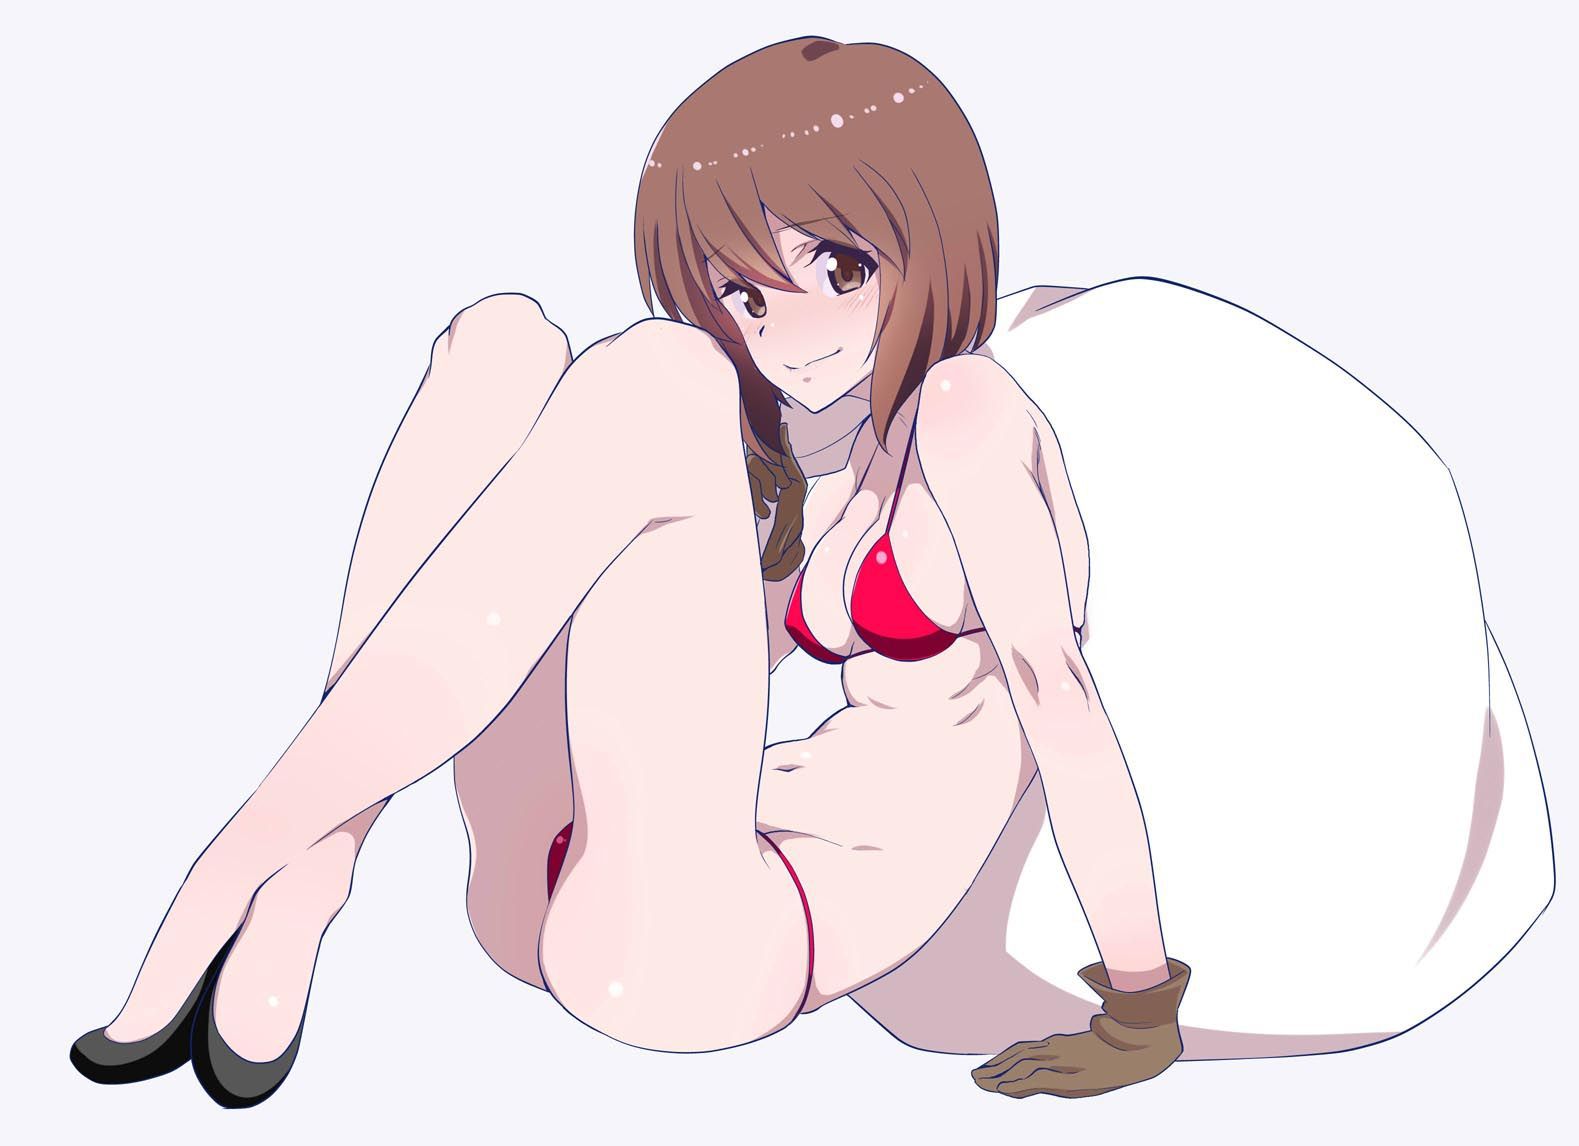 【2nd】 Erotic image of a girl with yoko milk puni puni part 47 15